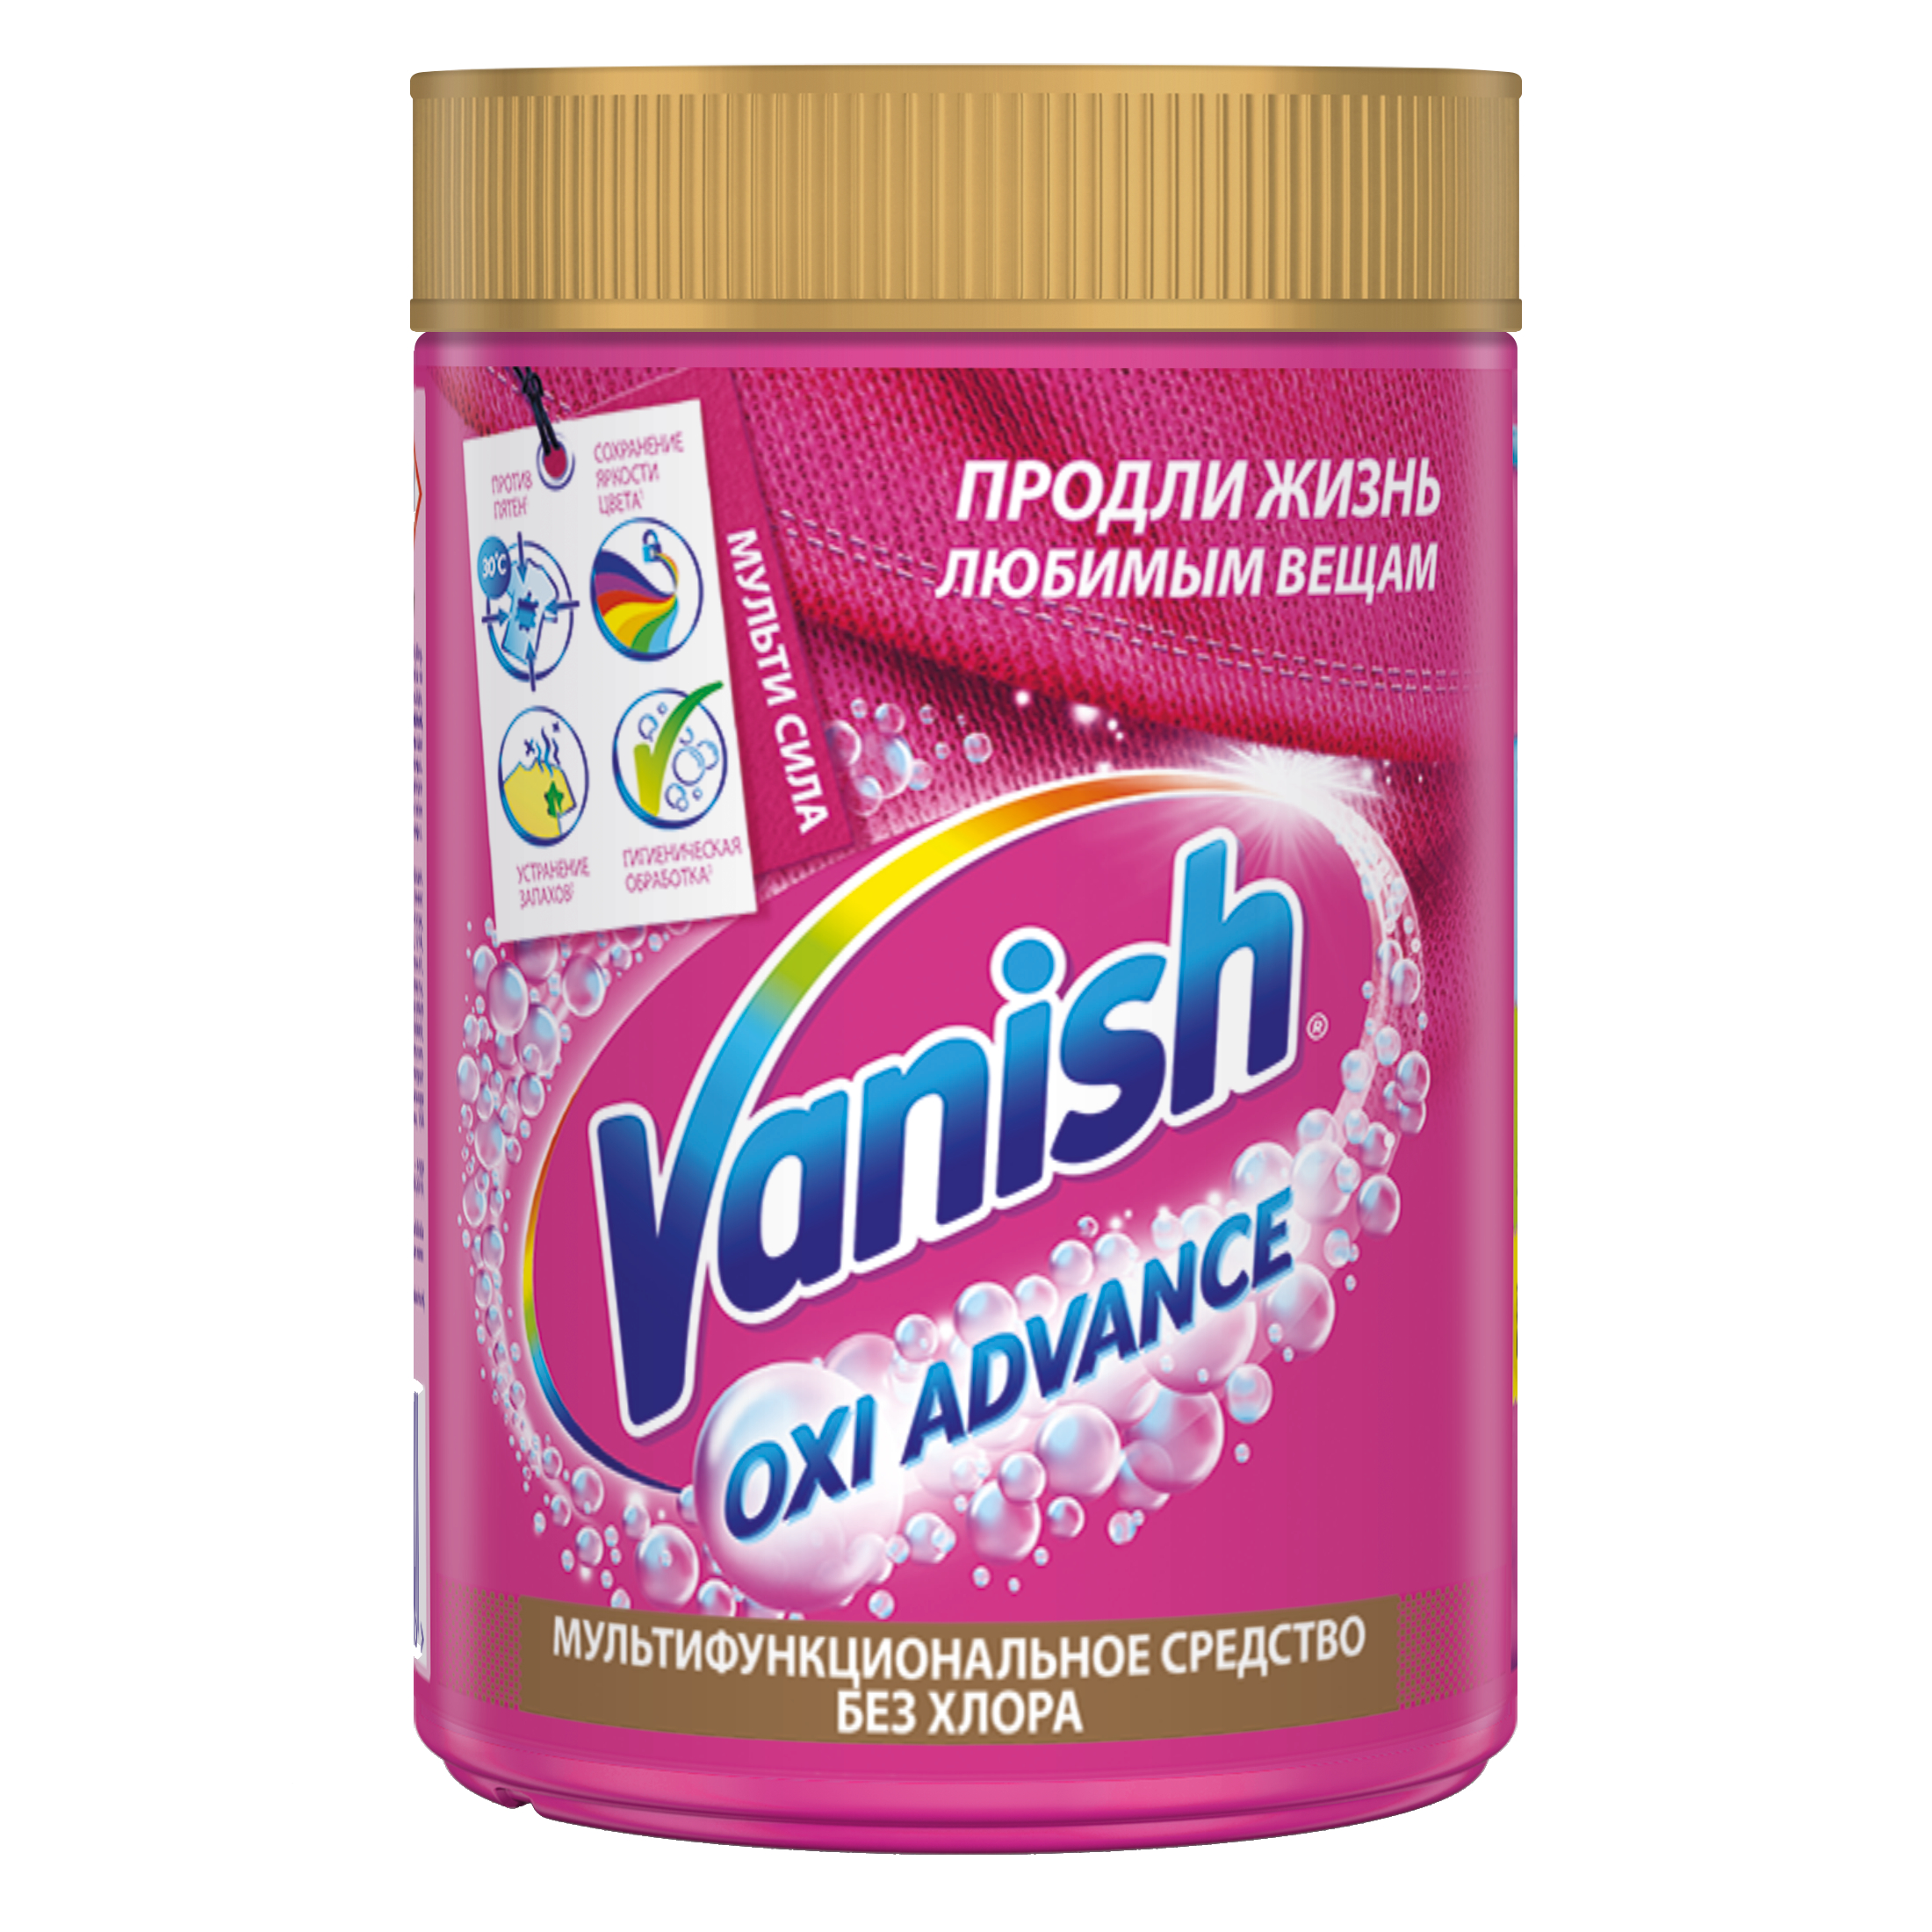 Пятновыводитель Vanish Orion для тканей порошок 800 г пятновыводитель vanish oxi action порошок 0 5 кг